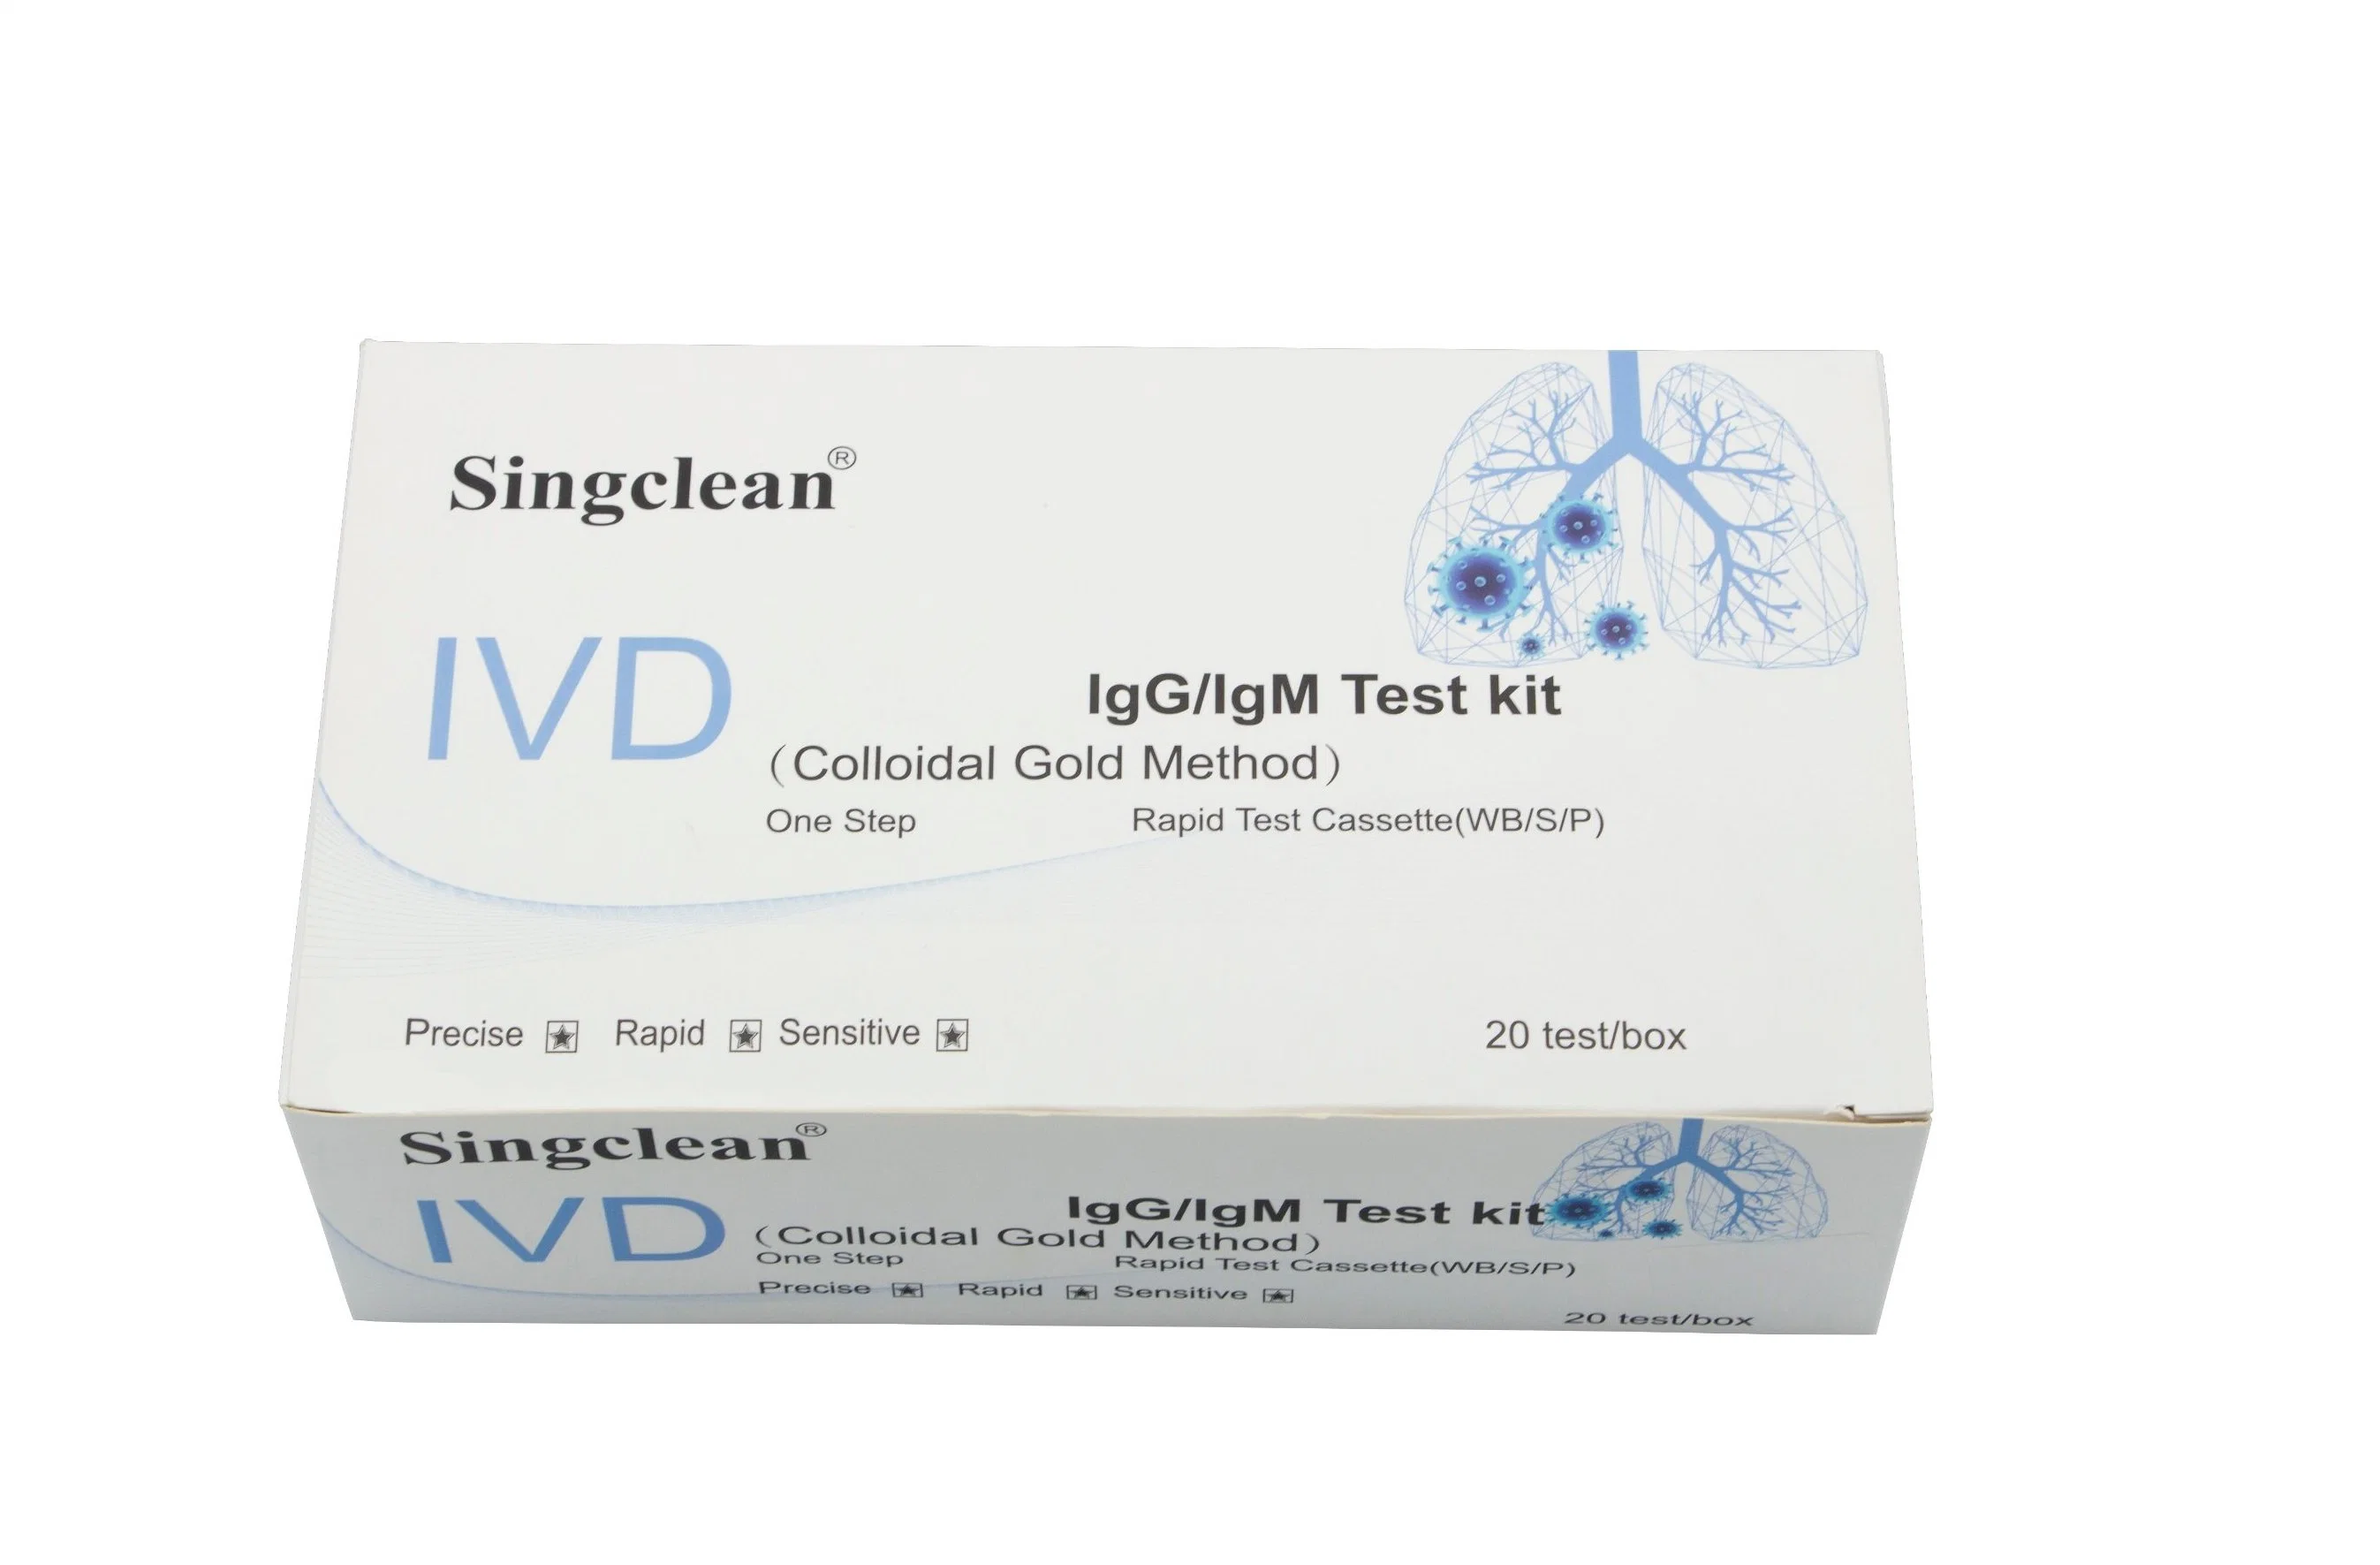 Singcنظيف Rapid IGG/IgM اختبار الجسم المضاد للدم Kit اختبار تشخيصي سريع لاختبار الكتلة